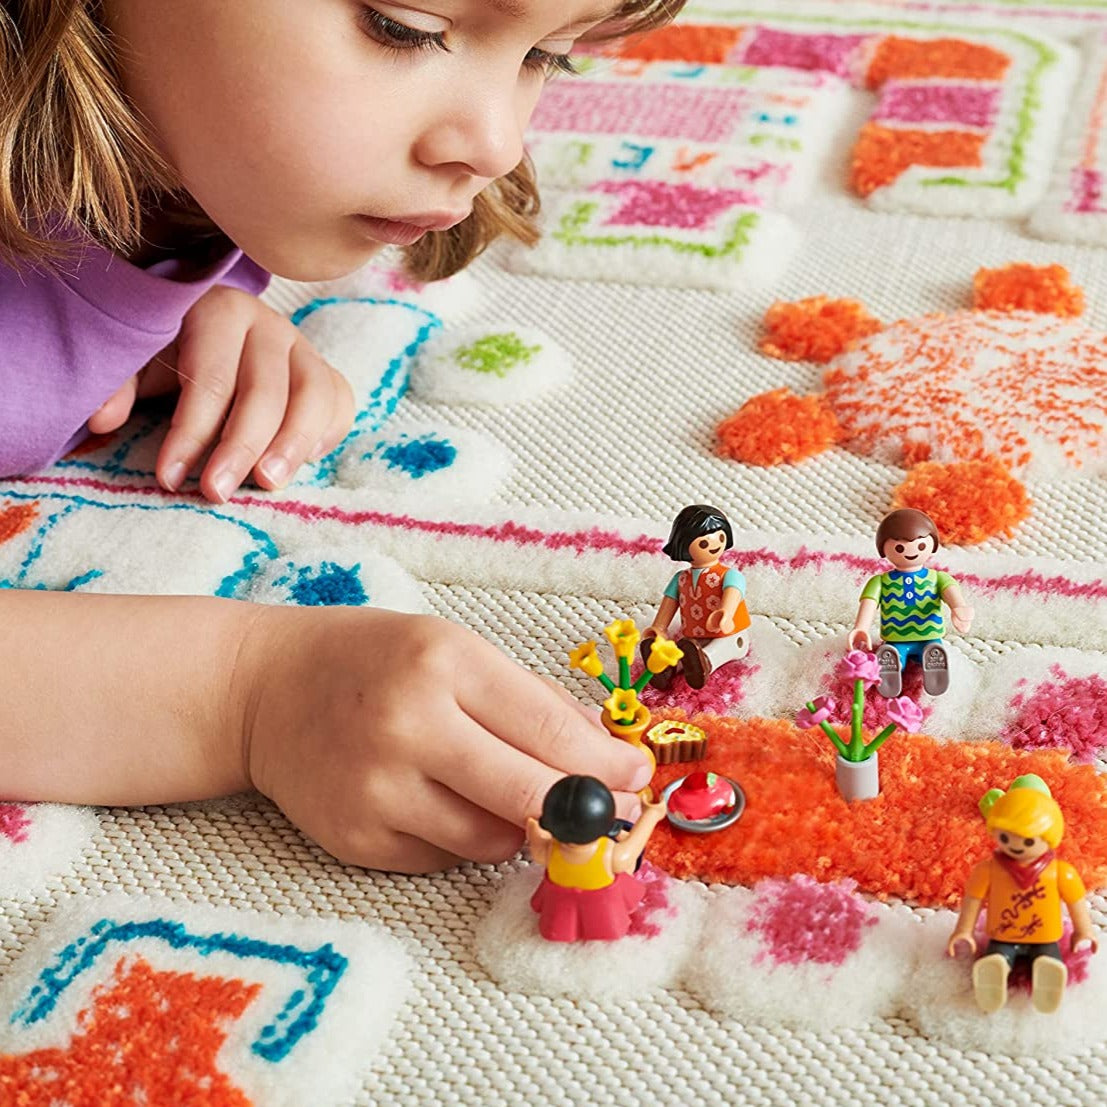 IVI 3D Play Carpet, Playhouse design - Medium Size (150cm x 100cm) - Neo Essentials Store